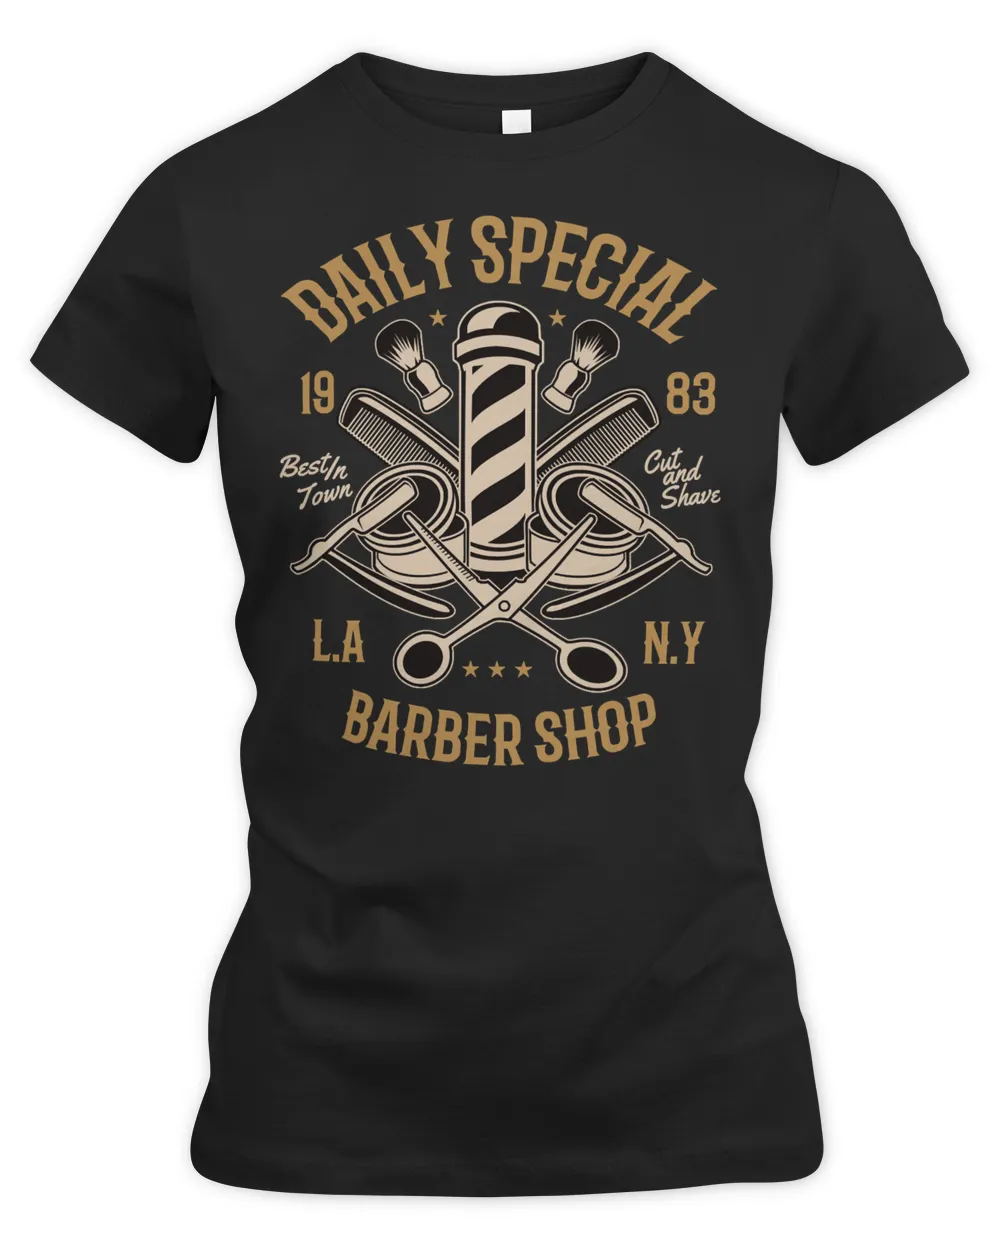 Barber Daly special barber,for hairdresser, hairdresser 114 hairdresser